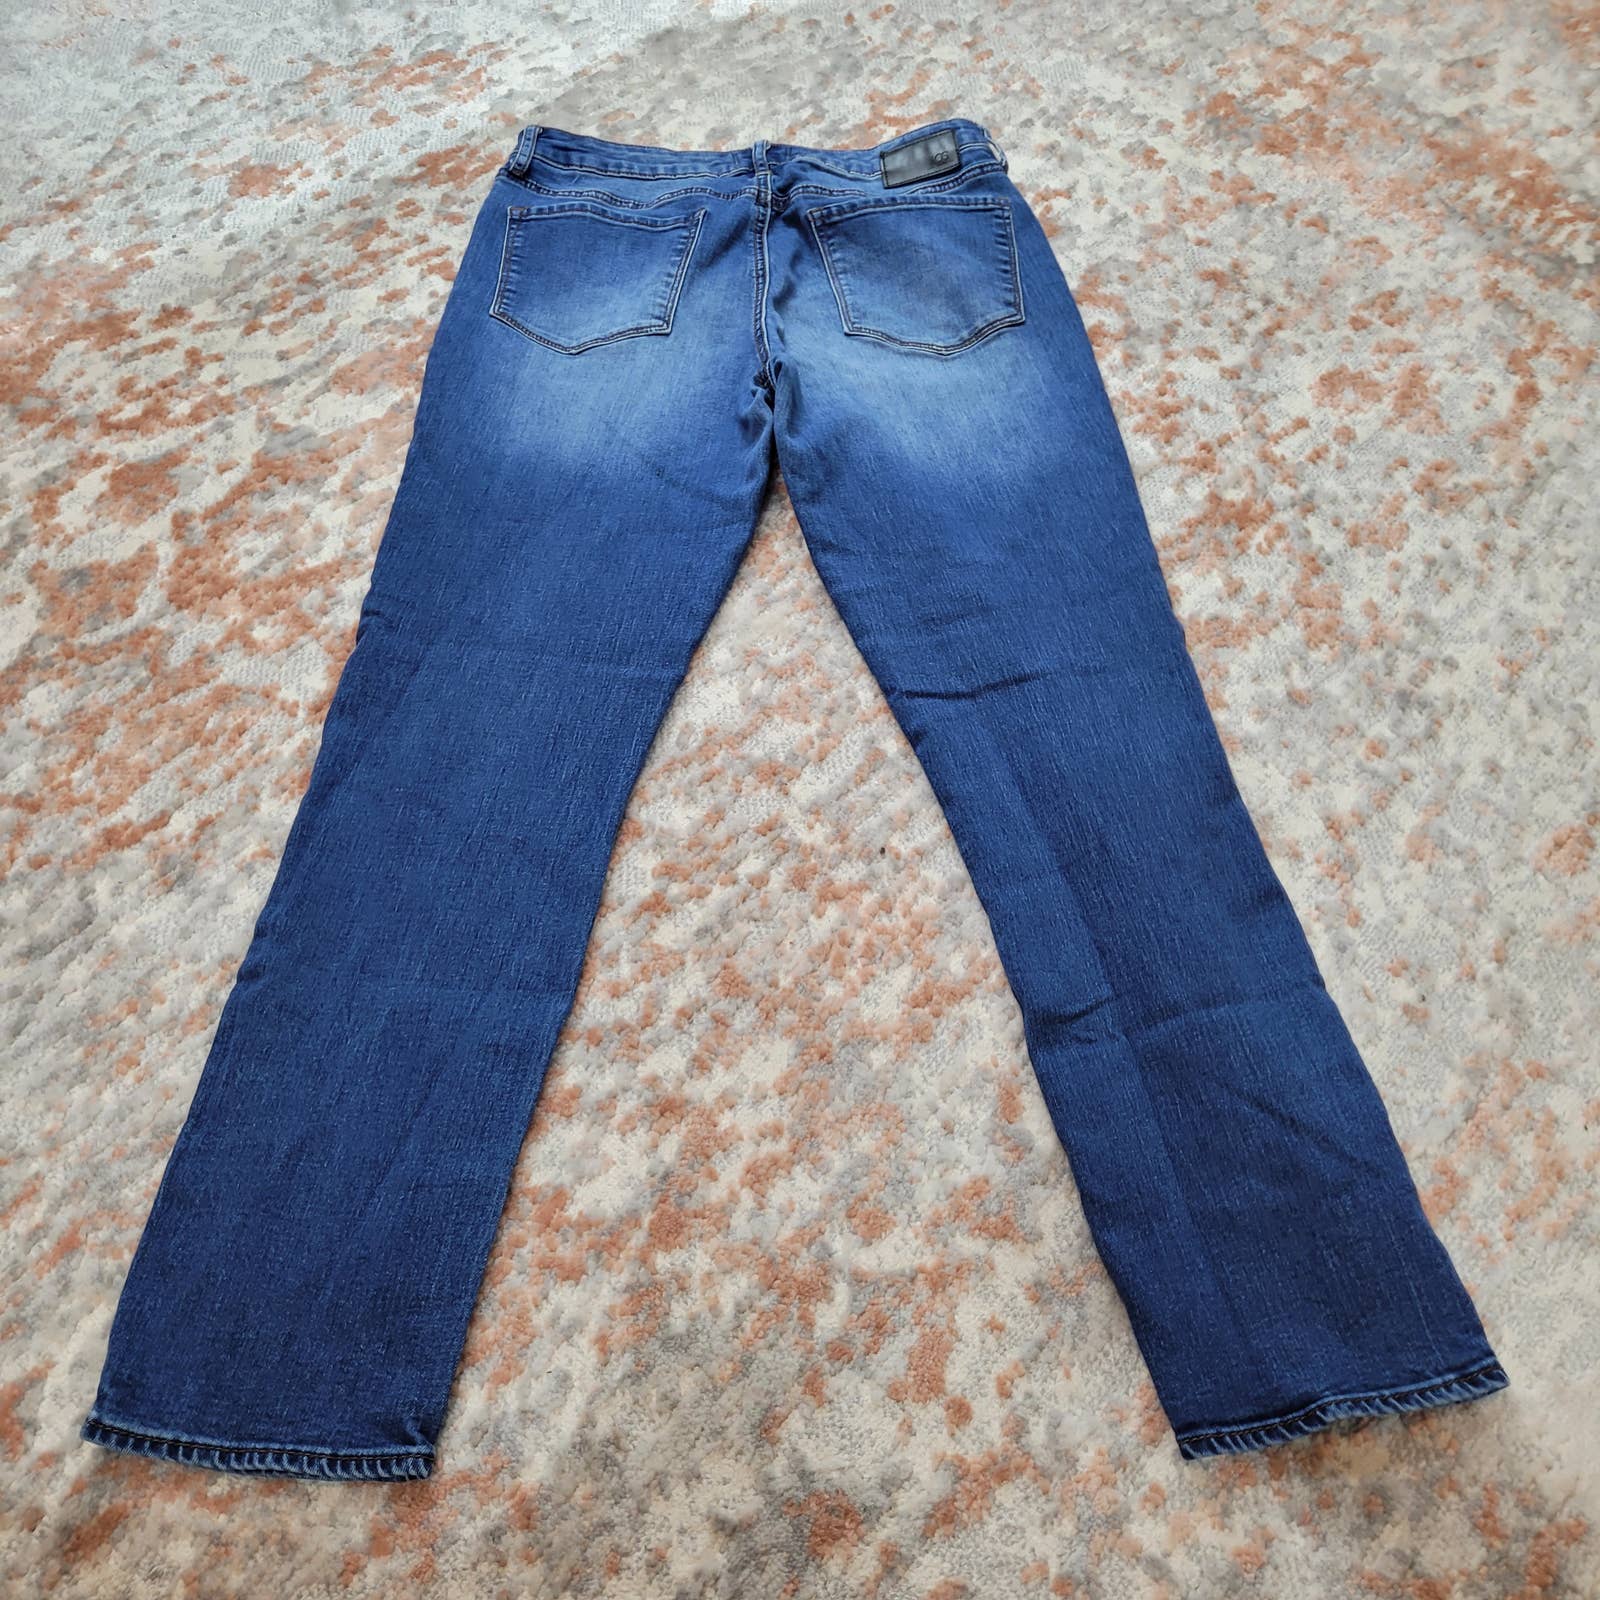 AOS Hailey Skinny Jeans - Size 28Markita's ClosetArticles Of Society